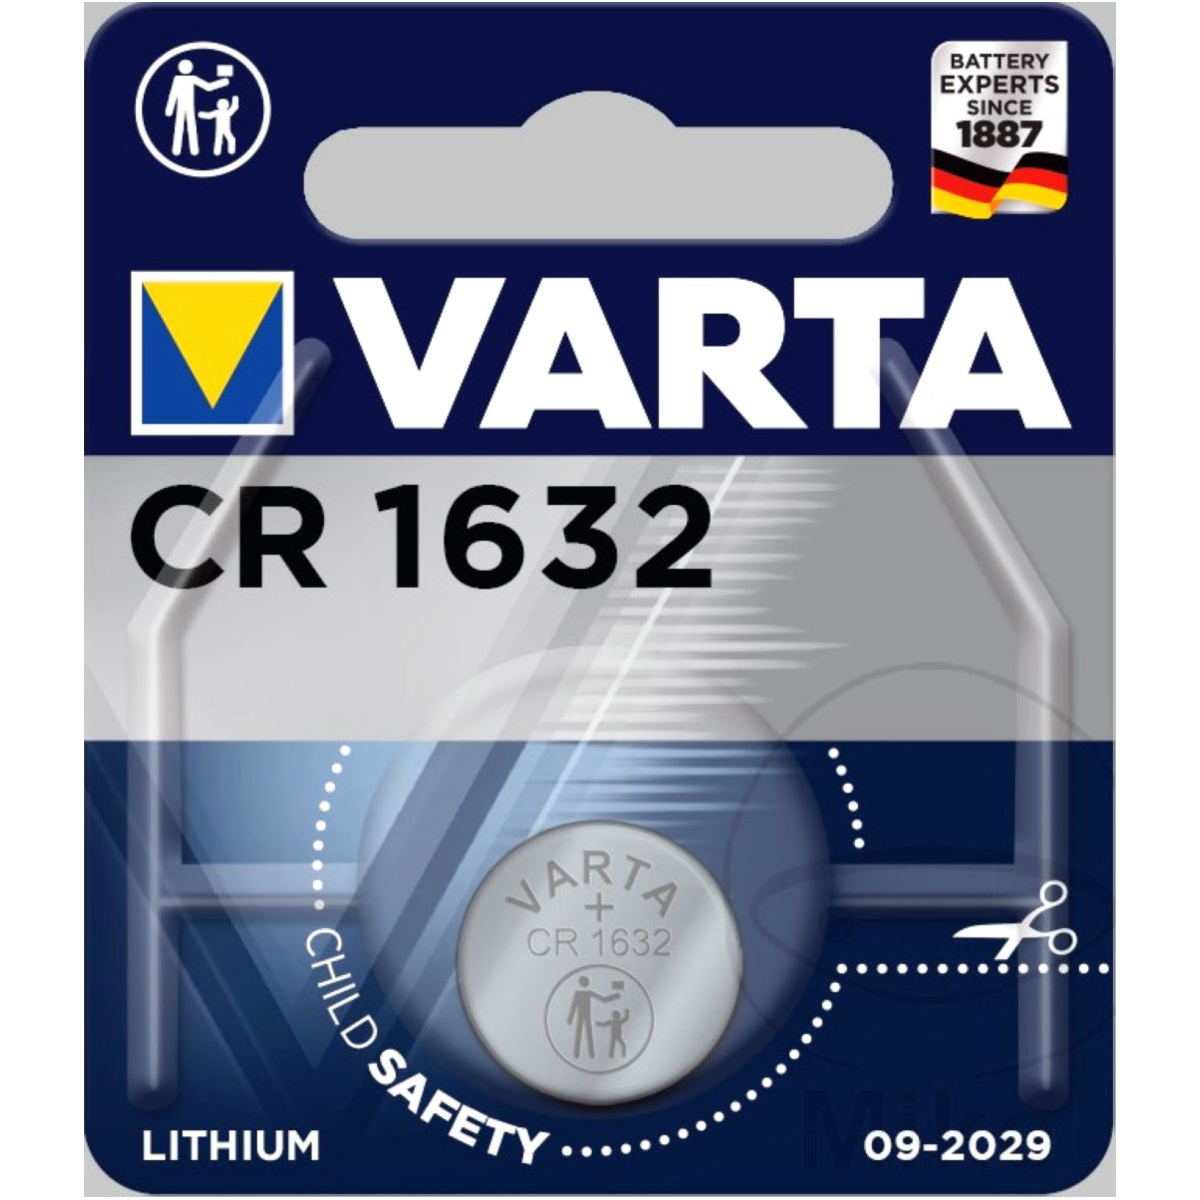 Varta 06632 101 401 gerätebatterie cr1632 von Varta